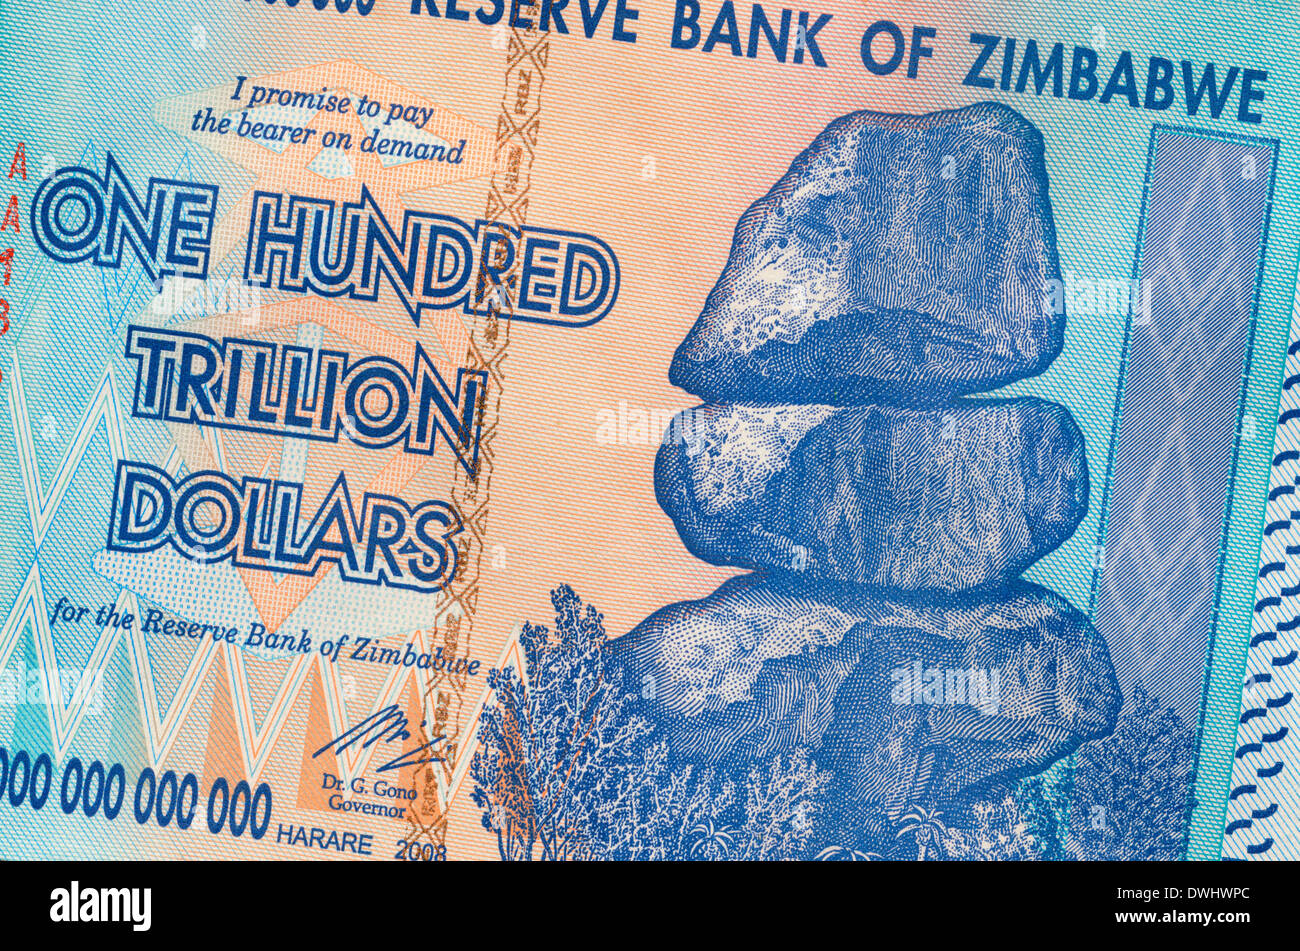 Banknote of Zimbabwe - One hundred trillion dollars Stock Photo